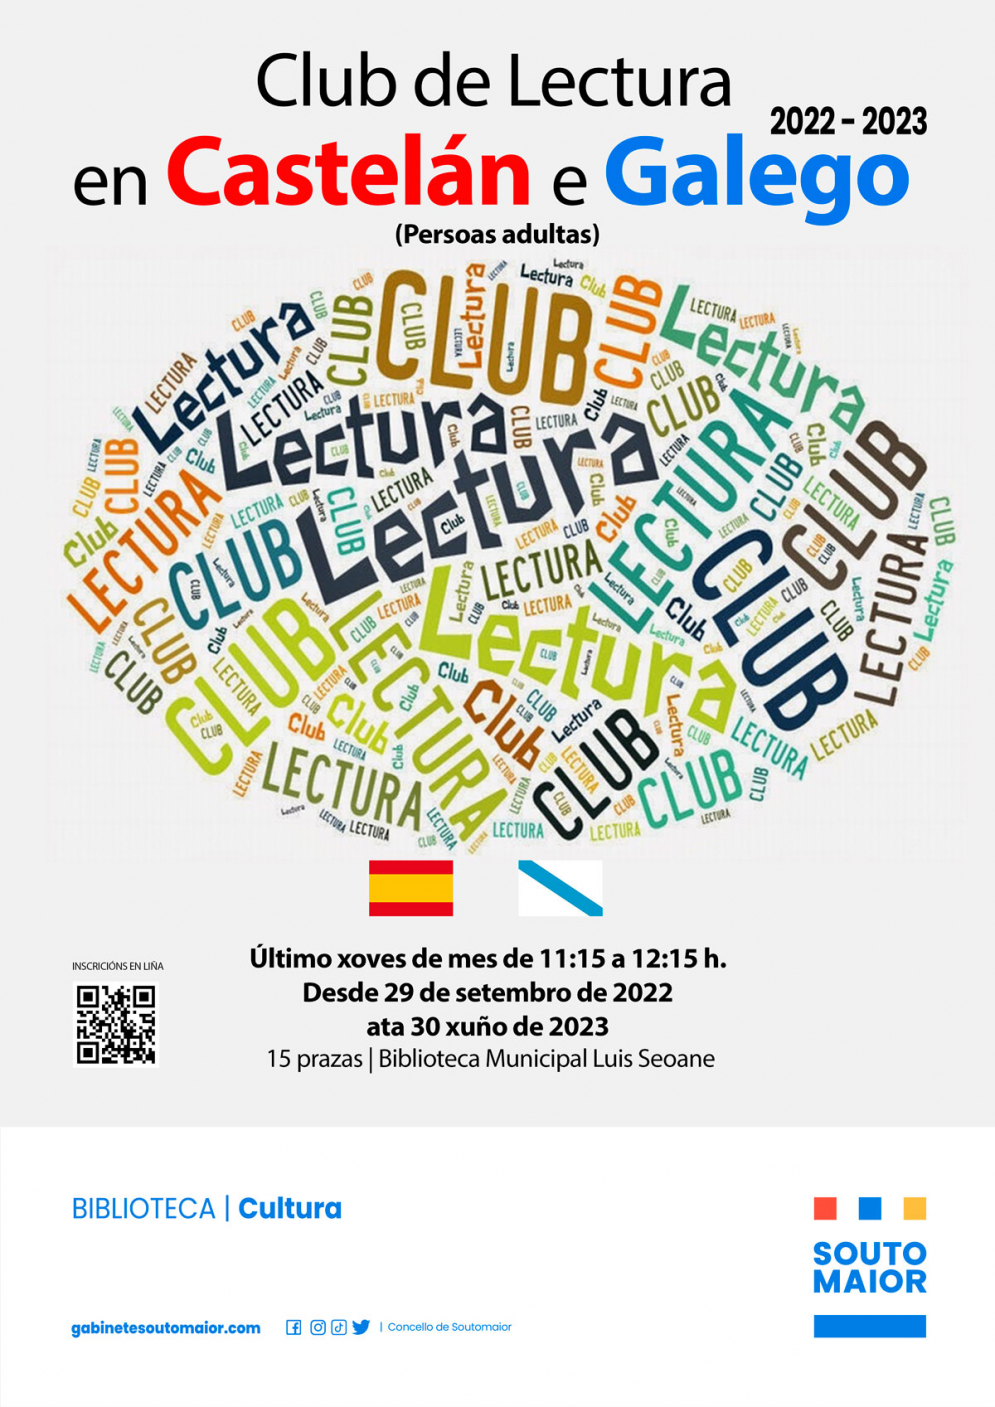 Club lectura en castelán e galego